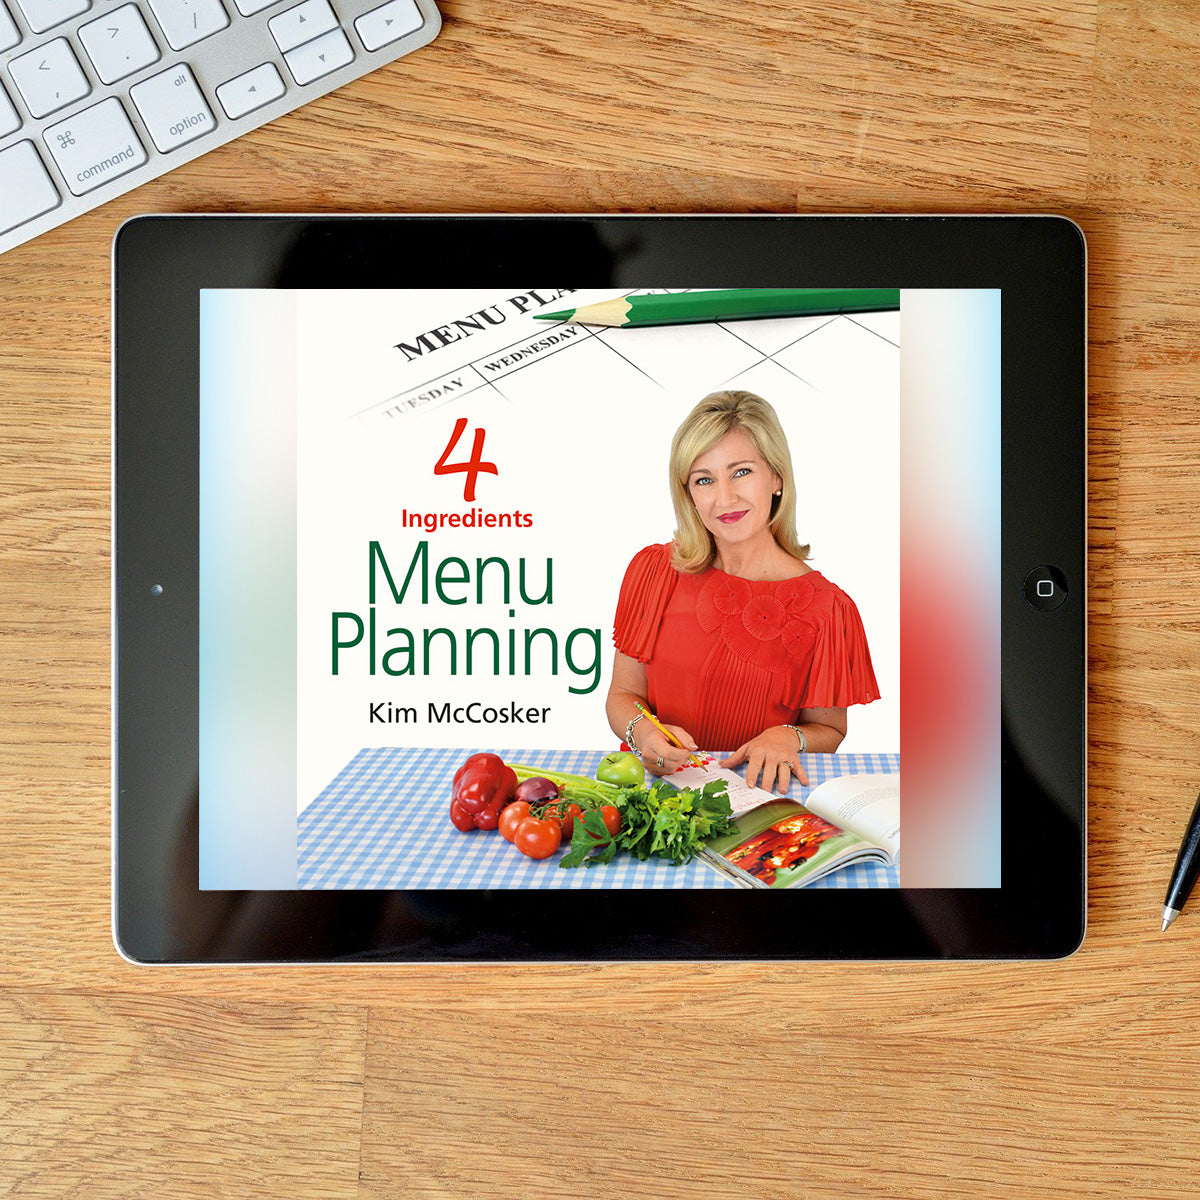 4 Ingredients Menu Planning (Digital eBook)